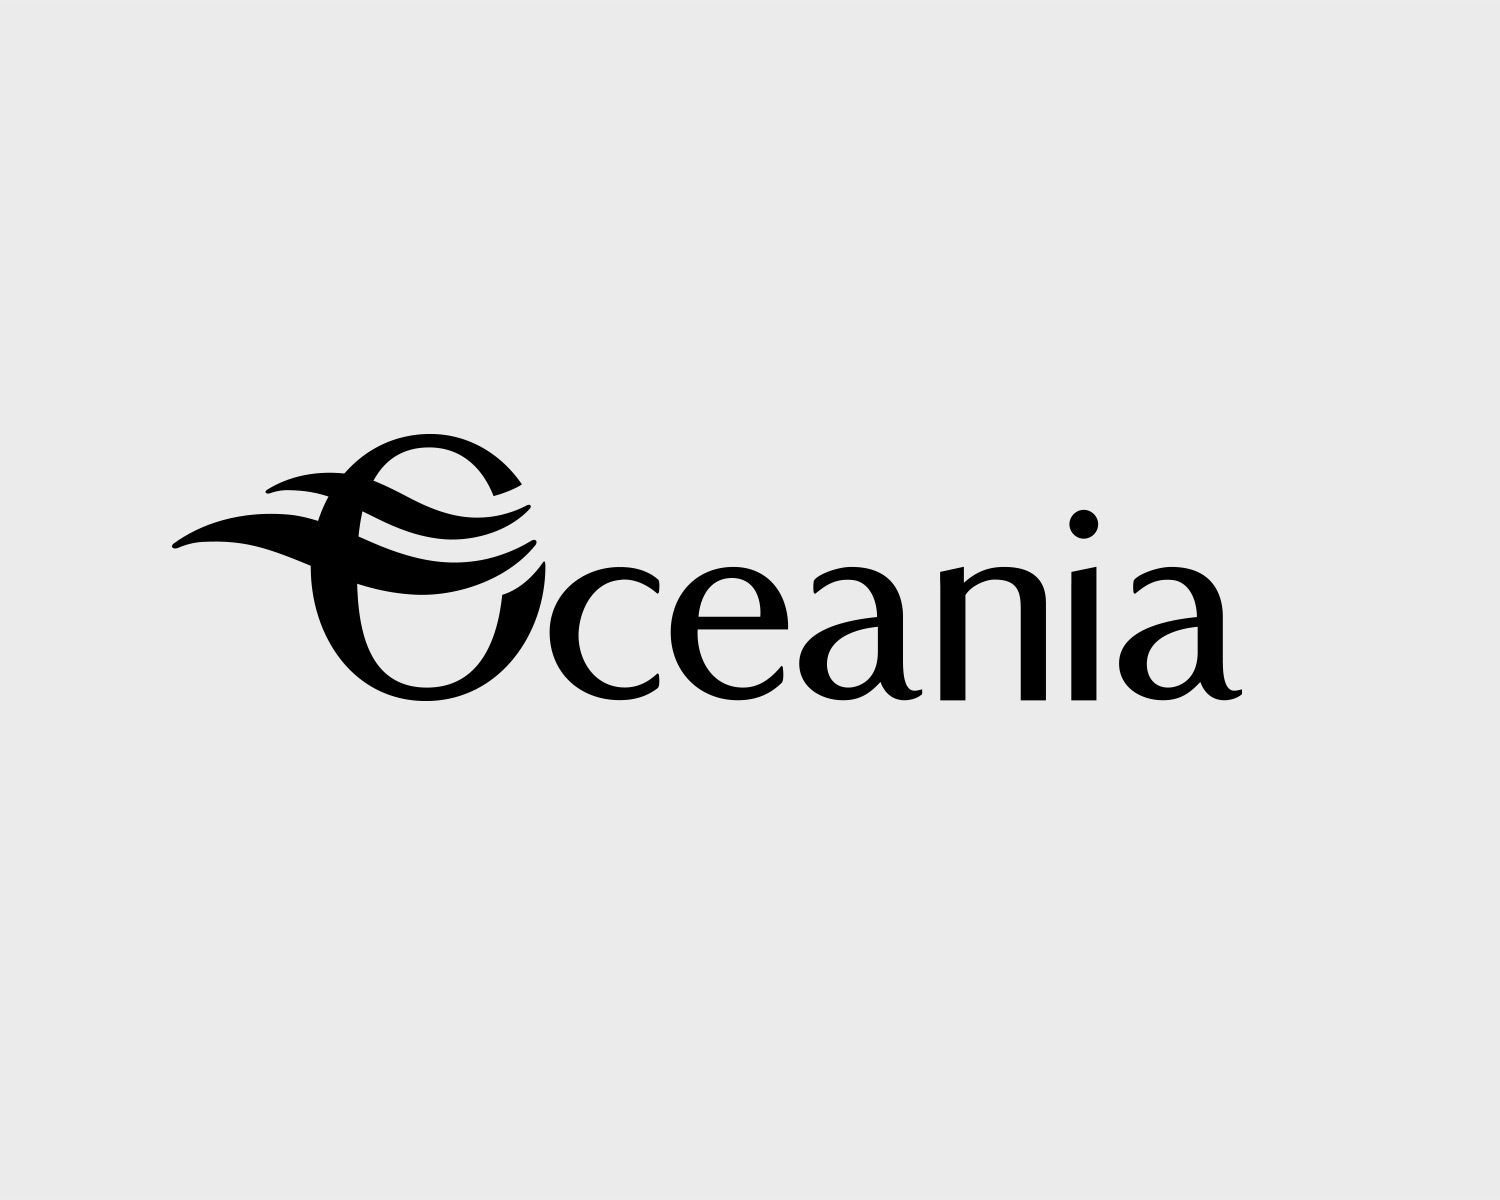 identite visuelle oceania hotel portefolio logo arnaud chauvel graphiste